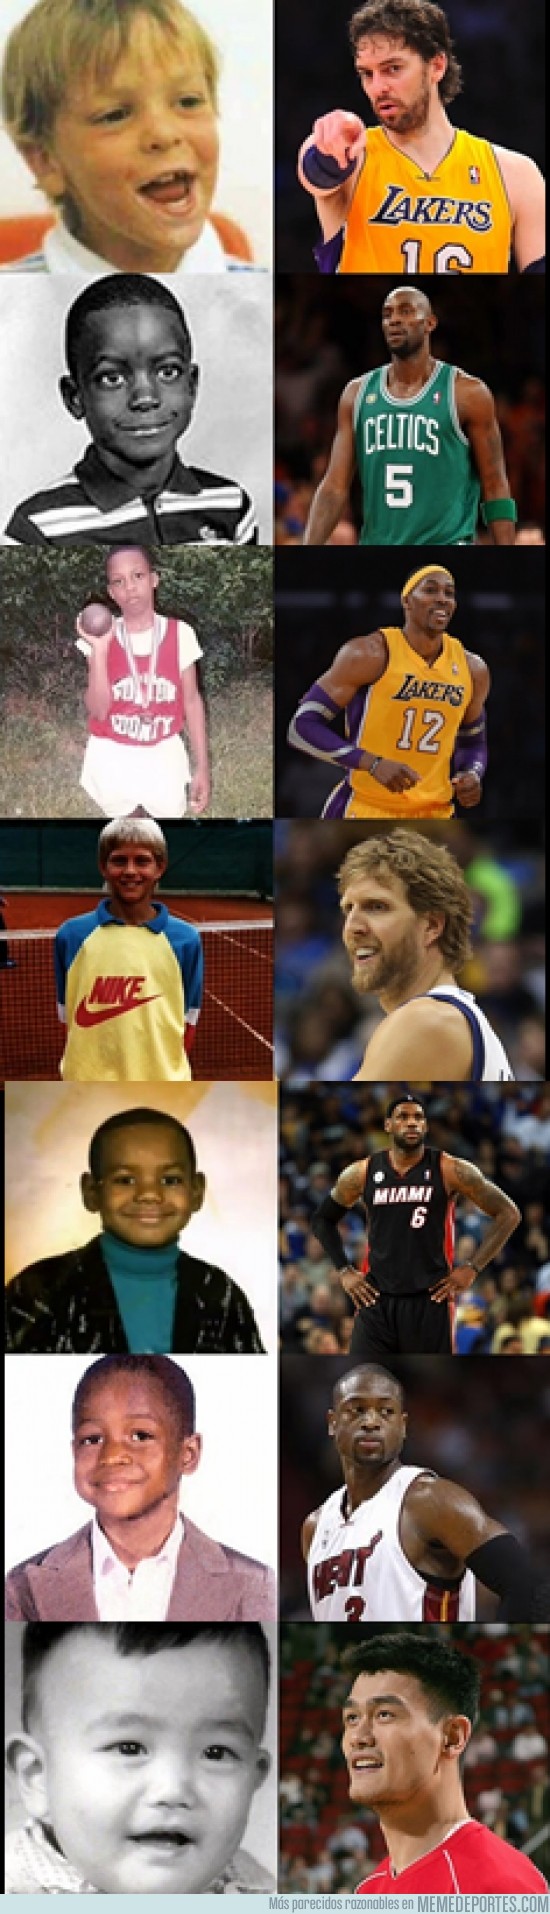 167216 - Los jugadores de la NBA en la infancia